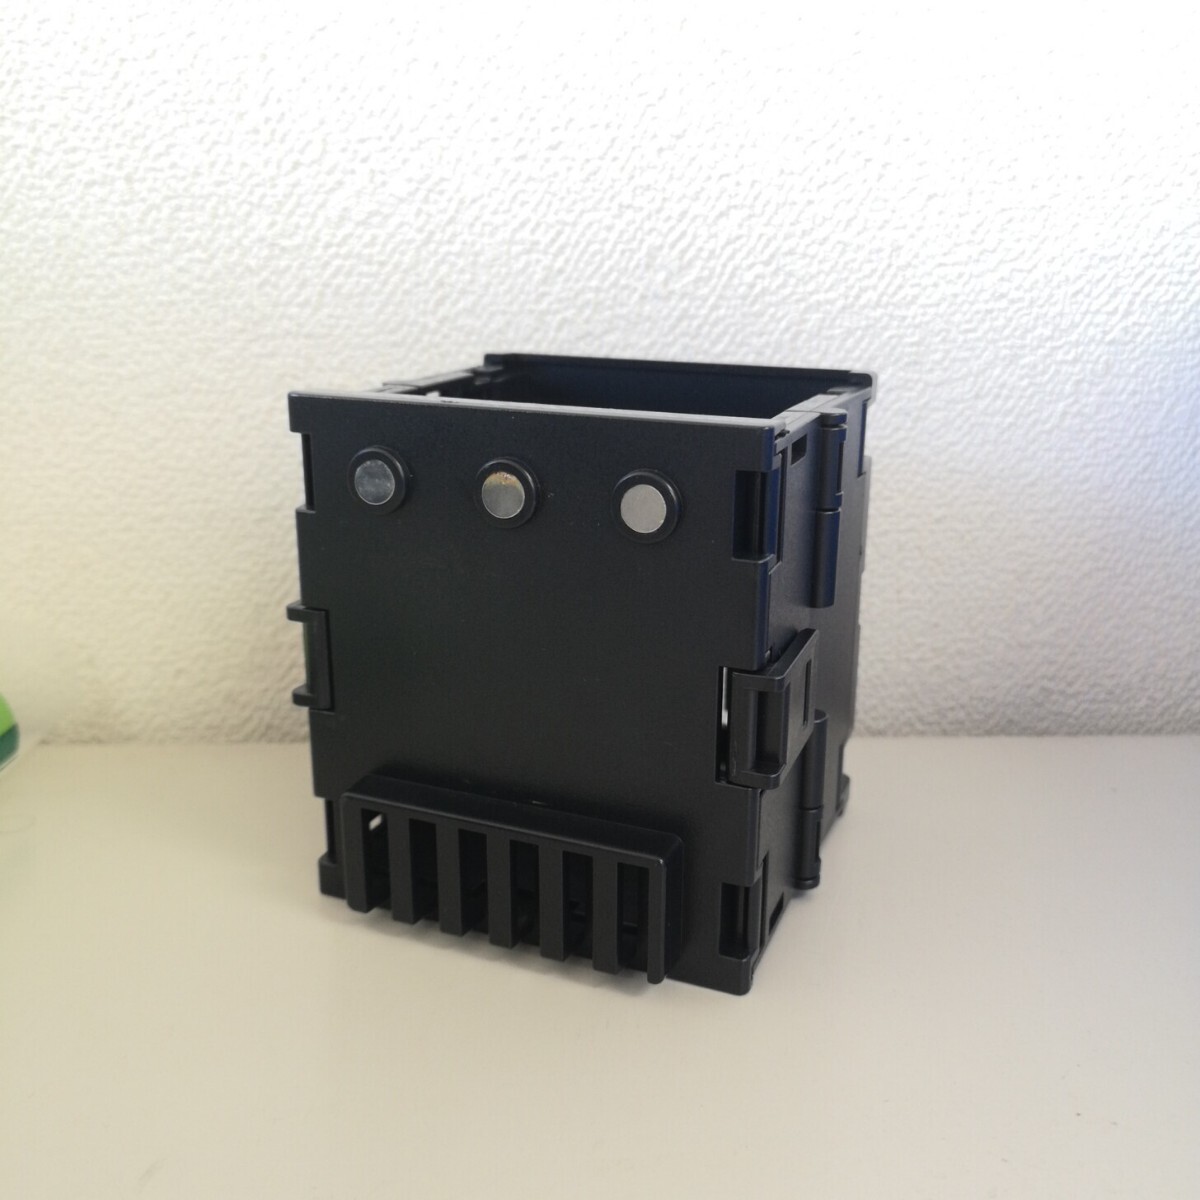 タックルボックス用折り畳み式ドリンクホルダー/オリコンドリンクホルダーBM(互換)/メイホウ MEIHO 明邦/バケットマウスの画像1